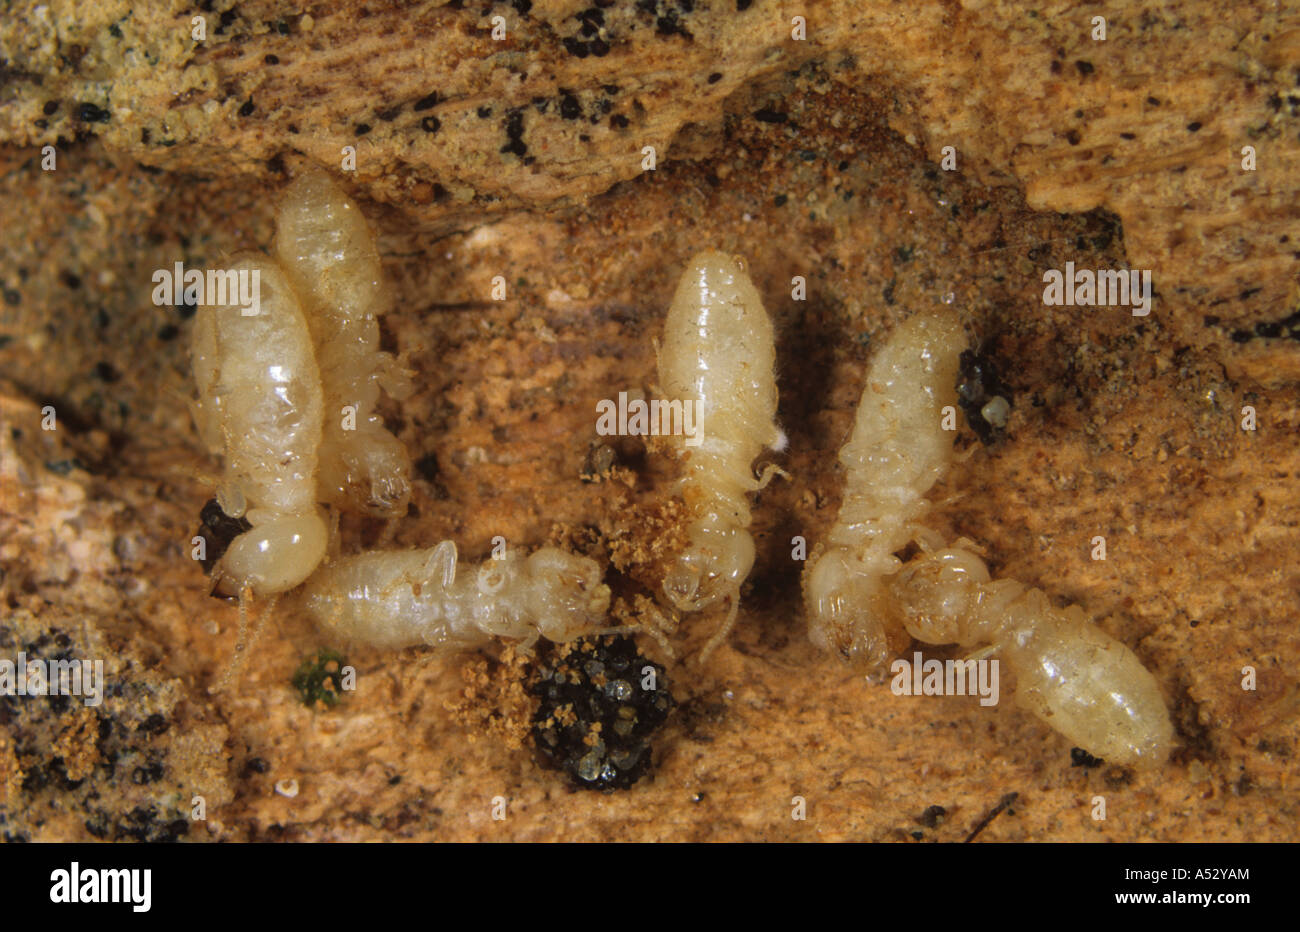 Les termites Reticulitermes flavipes tué par un champignon pathogène Metarhizum spp Banque D'Images